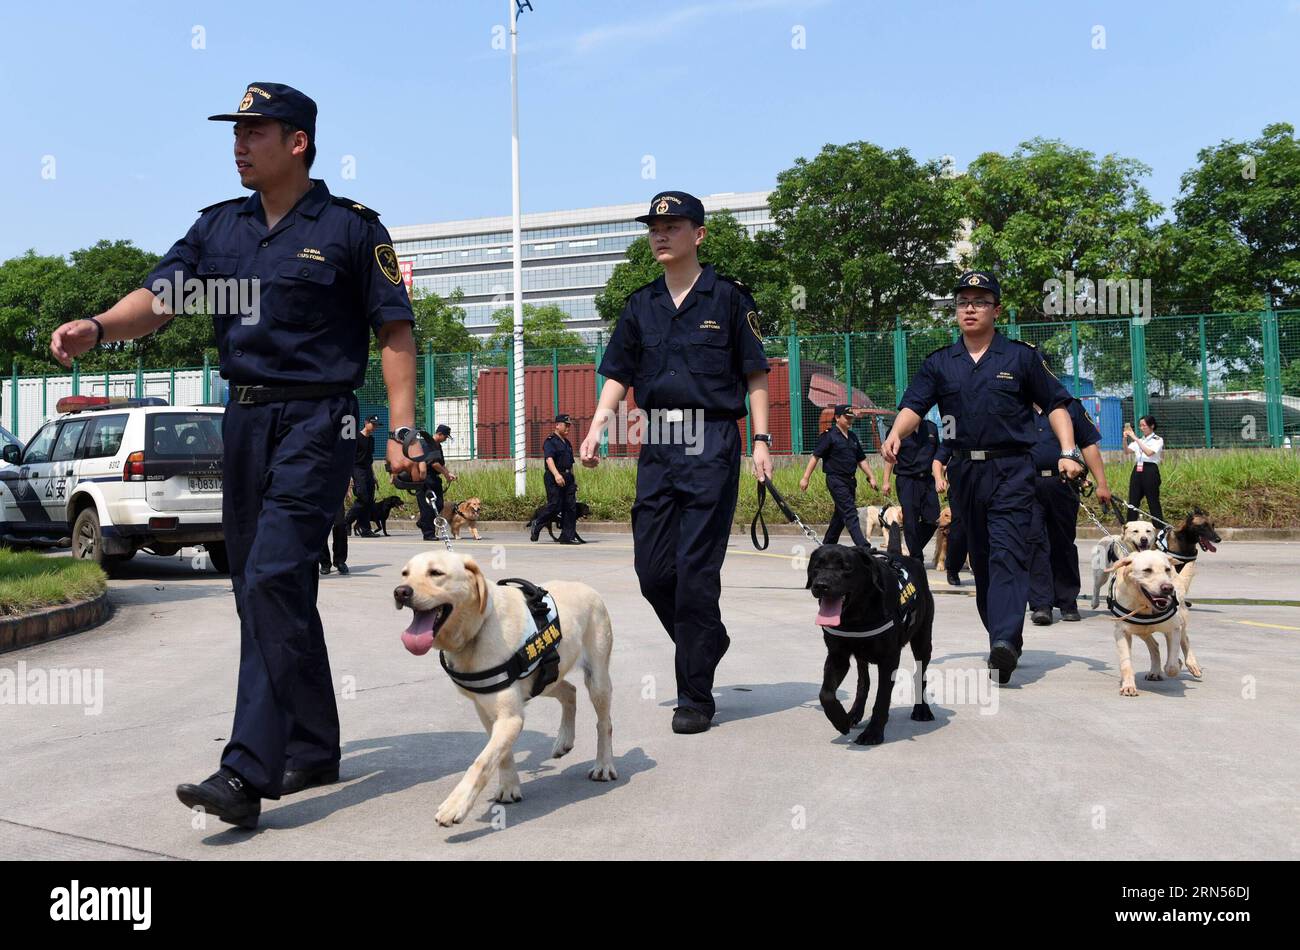 AKTUELLES ZEITGESCHEHEN Anti-Drogen-Kampagne im chinesischen Guangzhou (150615) -- GUANGZHOU, 15 giugno 2015 -- foto scattata il 15 giugno 2015 mostra cani da sniffer e i loro addestratori in una cerimonia di lancio di una campagna antidroga a Guangzhou, capitale della provincia del Guangdong della Cina meridionale. L'Amministrazione generale delle dogane della Cina e il governo provinciale del Guangdong hanno lanciato insieme una campagna antidroga su larga scala a Guangzhou lunedì. Questa campagna è mirata in particolare al crescente traffico di droghe sintetiche nel Guangdong, e 40 cani da sniffer sono stati convocati in tutto il mondo Foto Stock